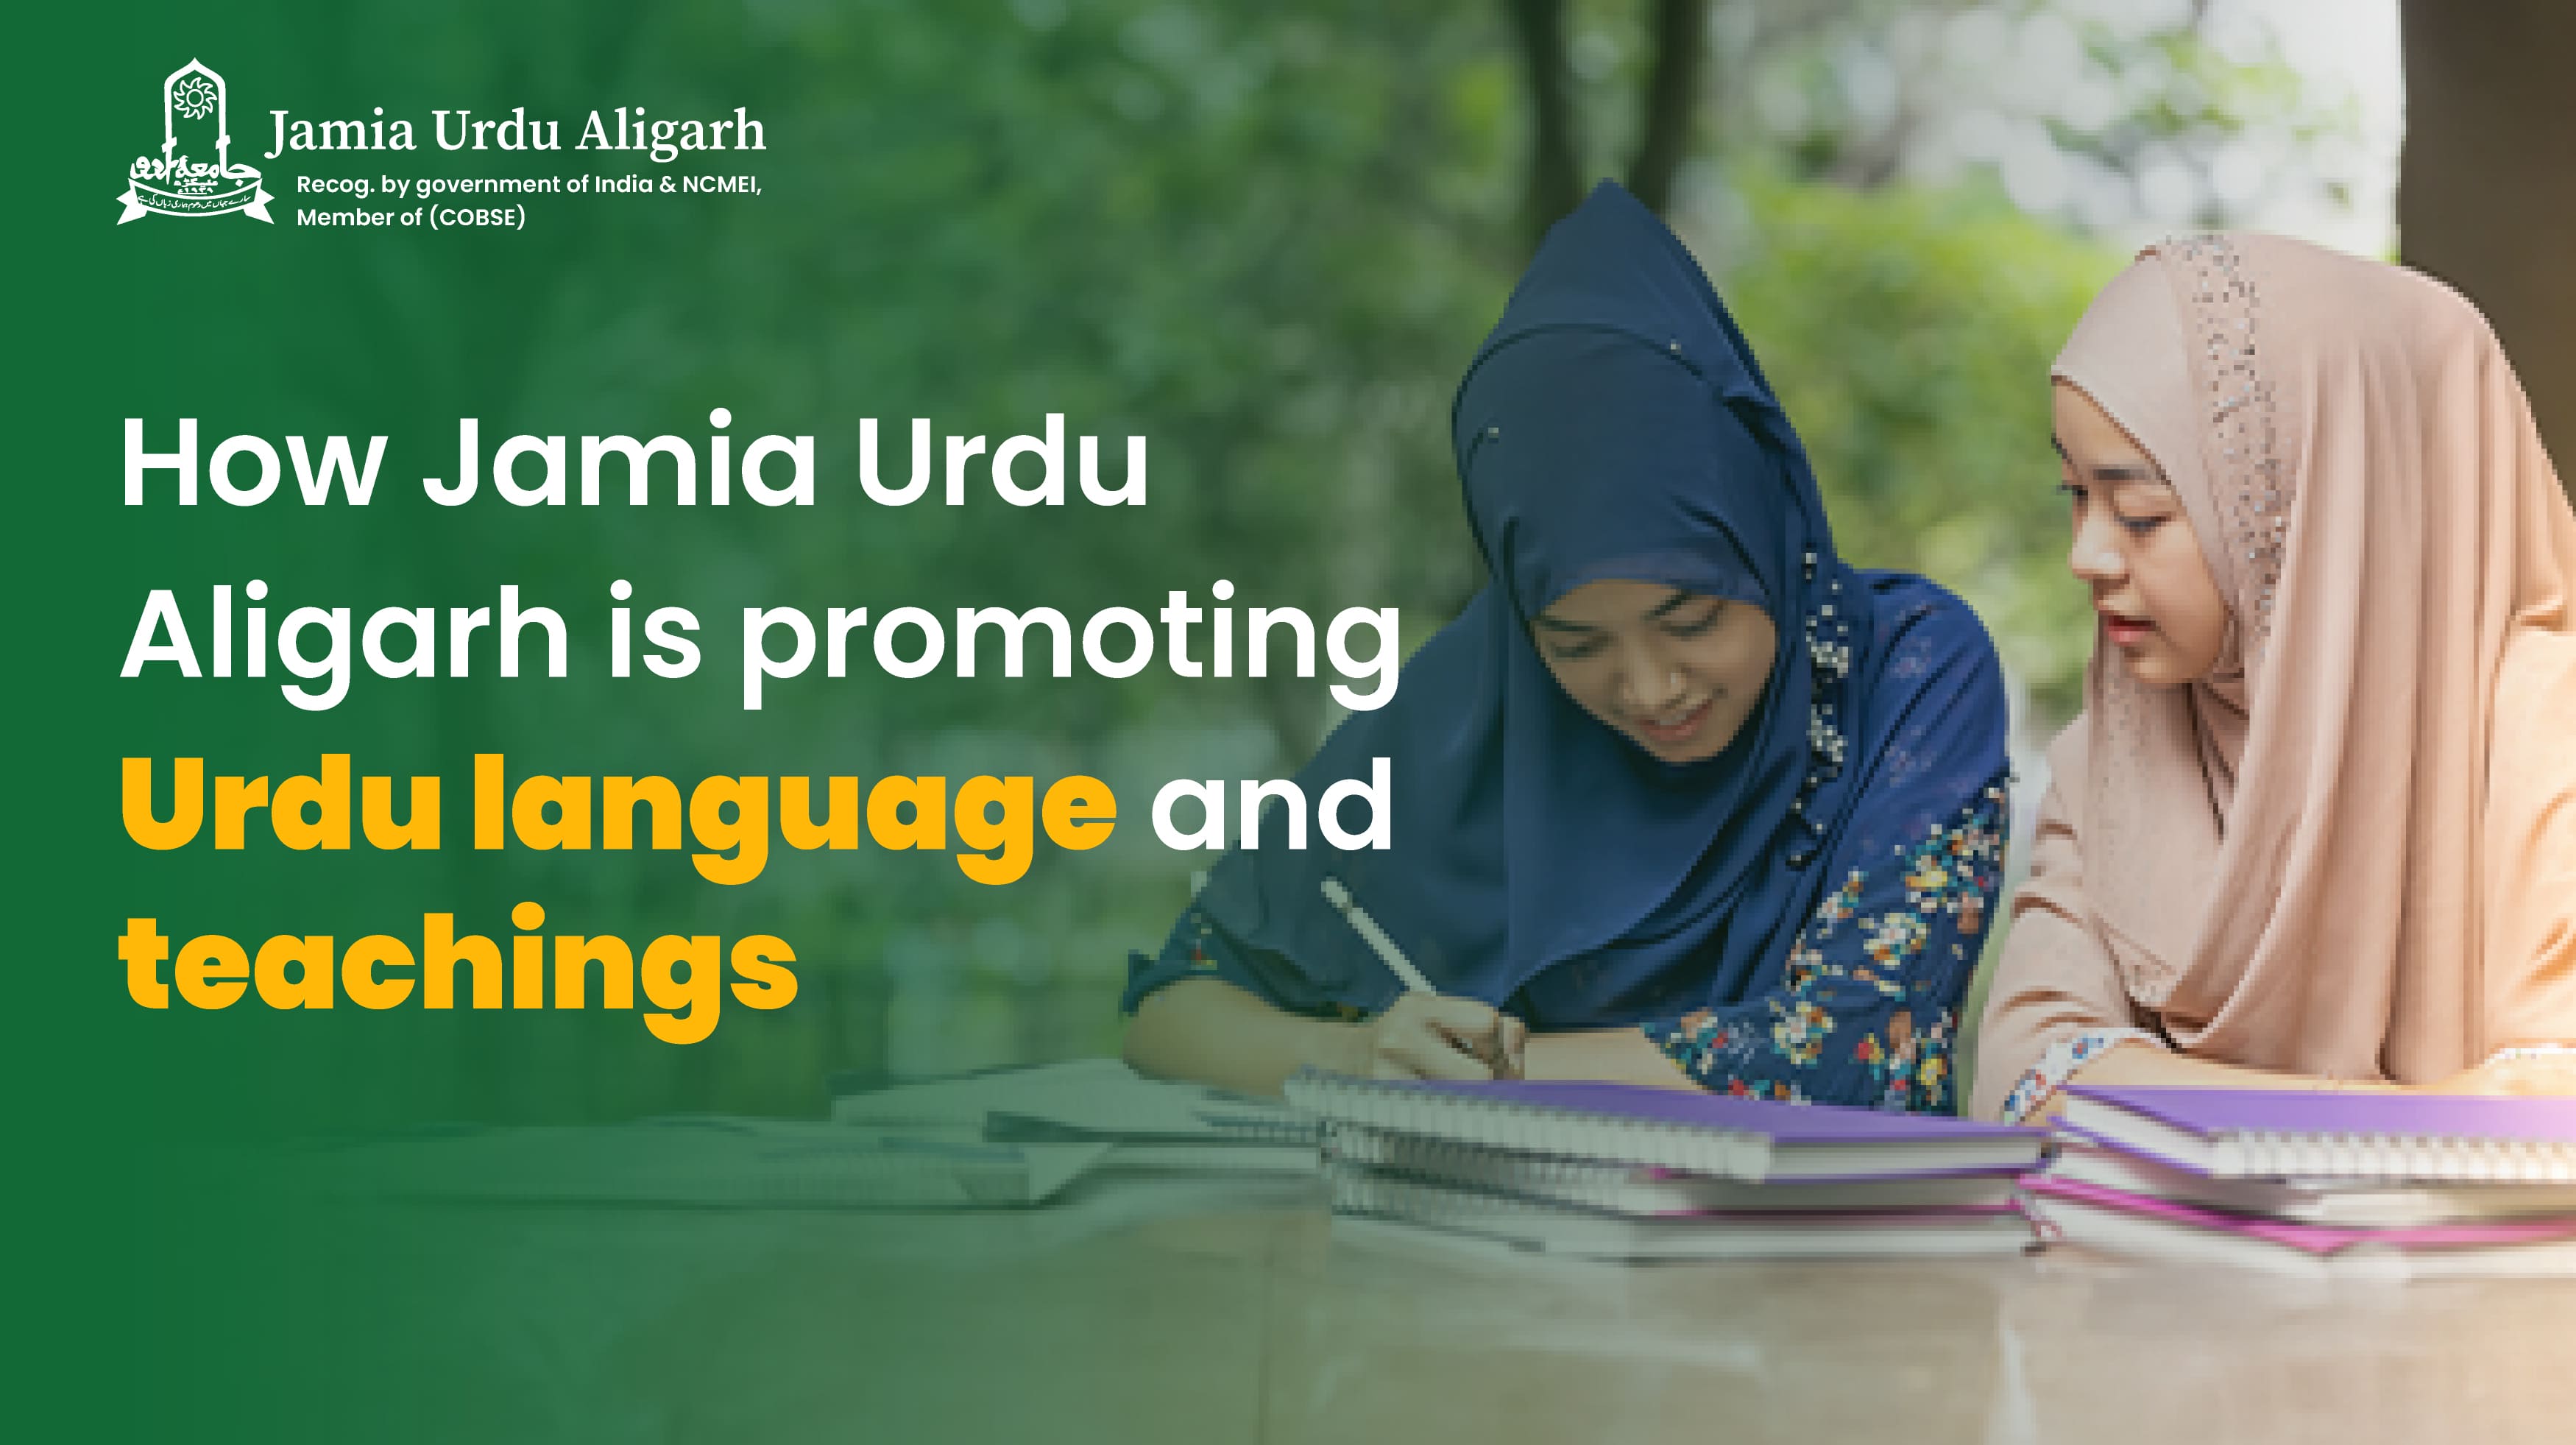 How Jamia Urdu Aligarh is Promoting Urdu language and Teachings